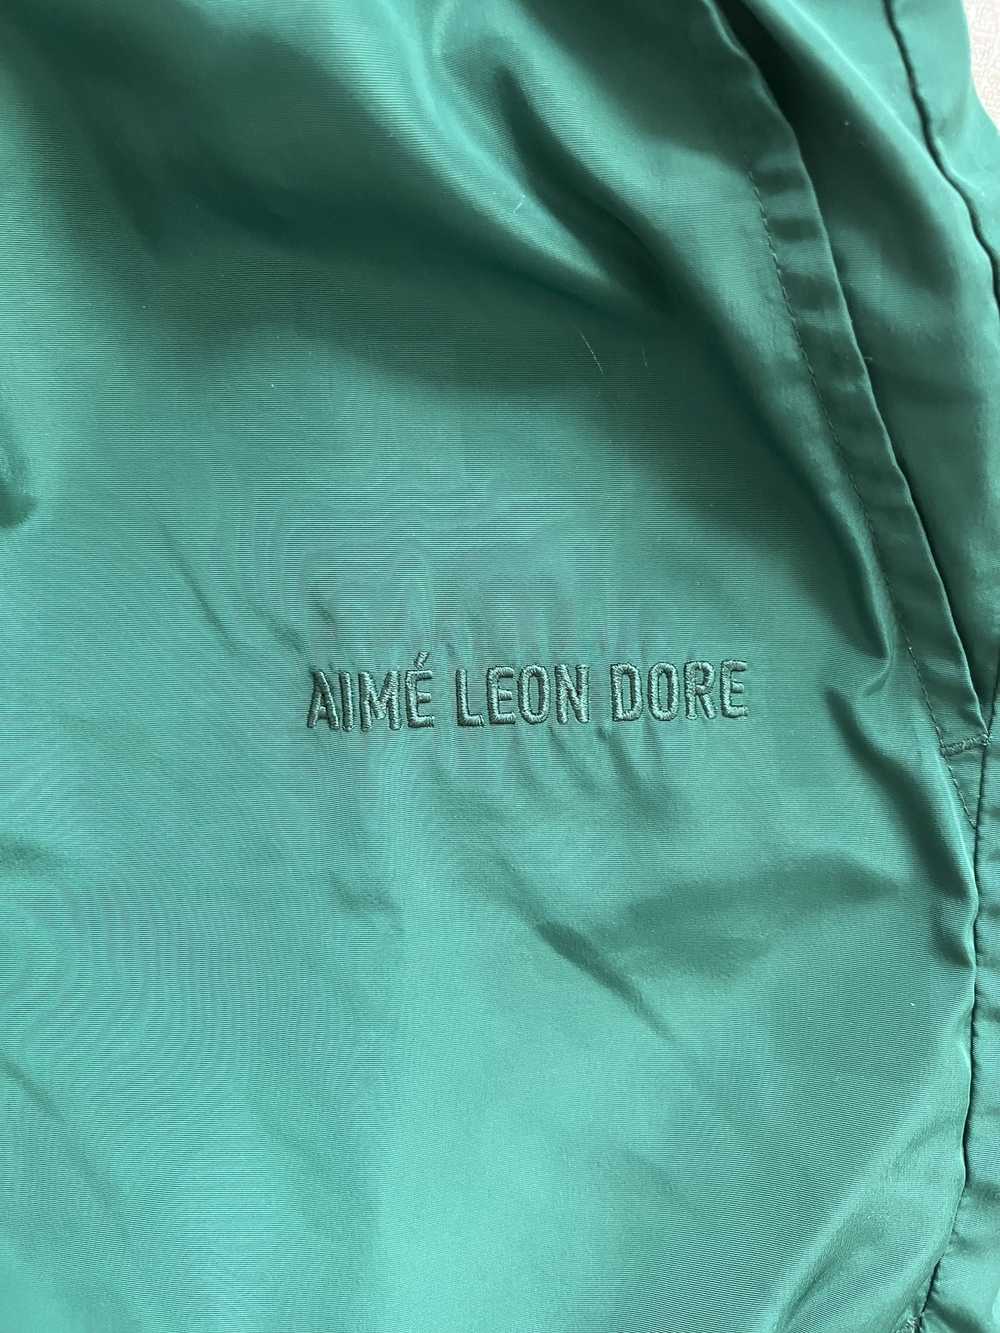 Aime Leon Dore ALD Green Swim Shorts (S) - image 3